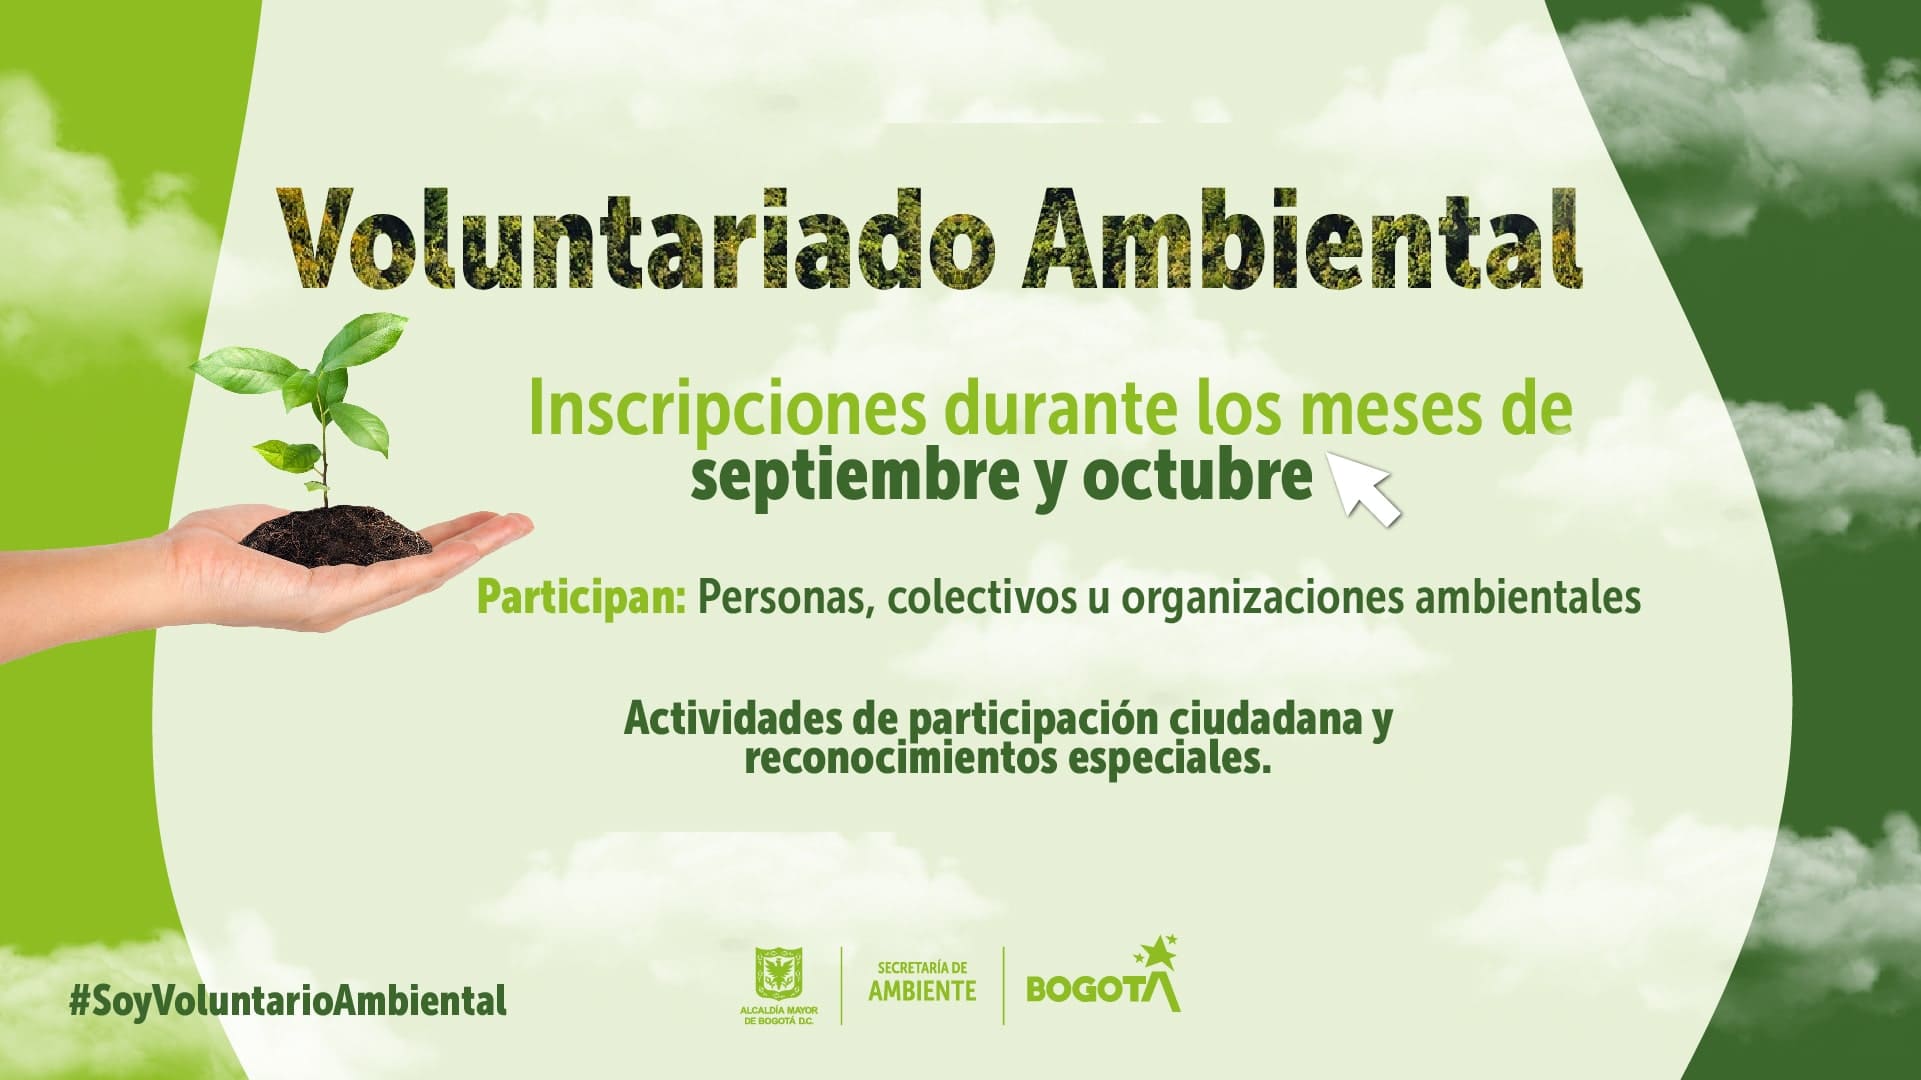 Nueva convocatoria para el programa de Voluntariado Ambiental en Bogotá